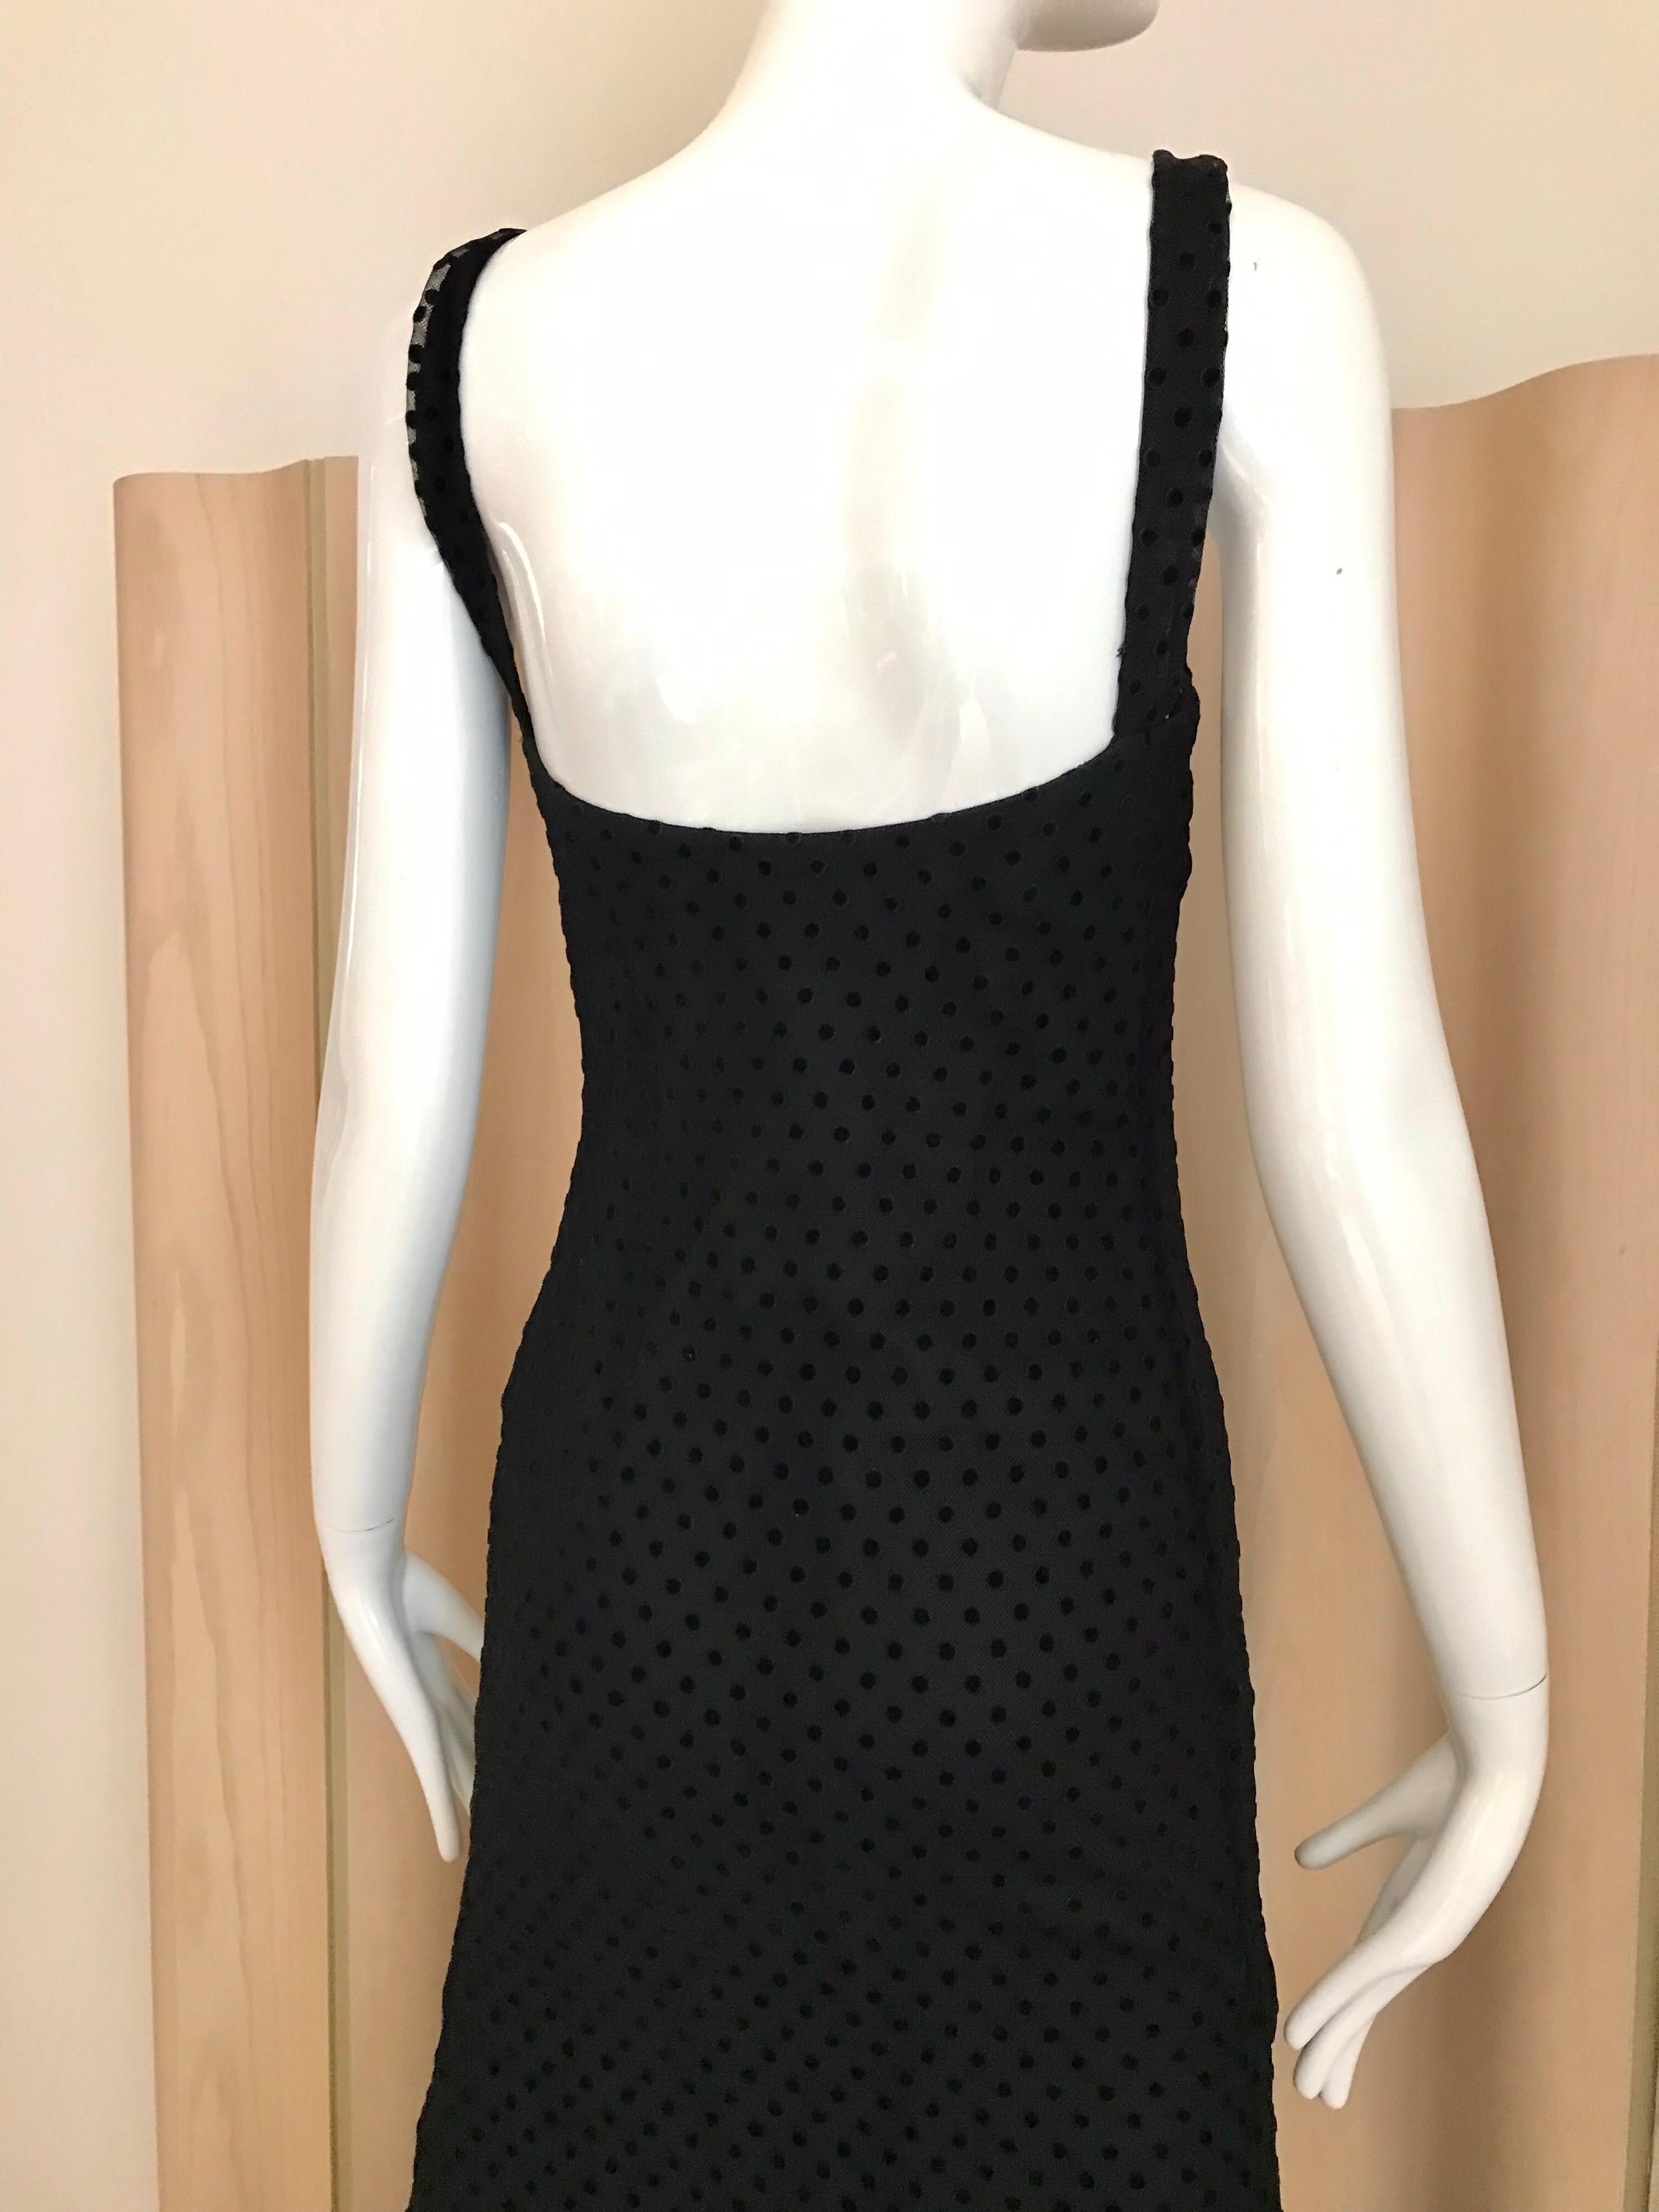 Christian Dior Black Net Dress with Velvet Dot Dress 5